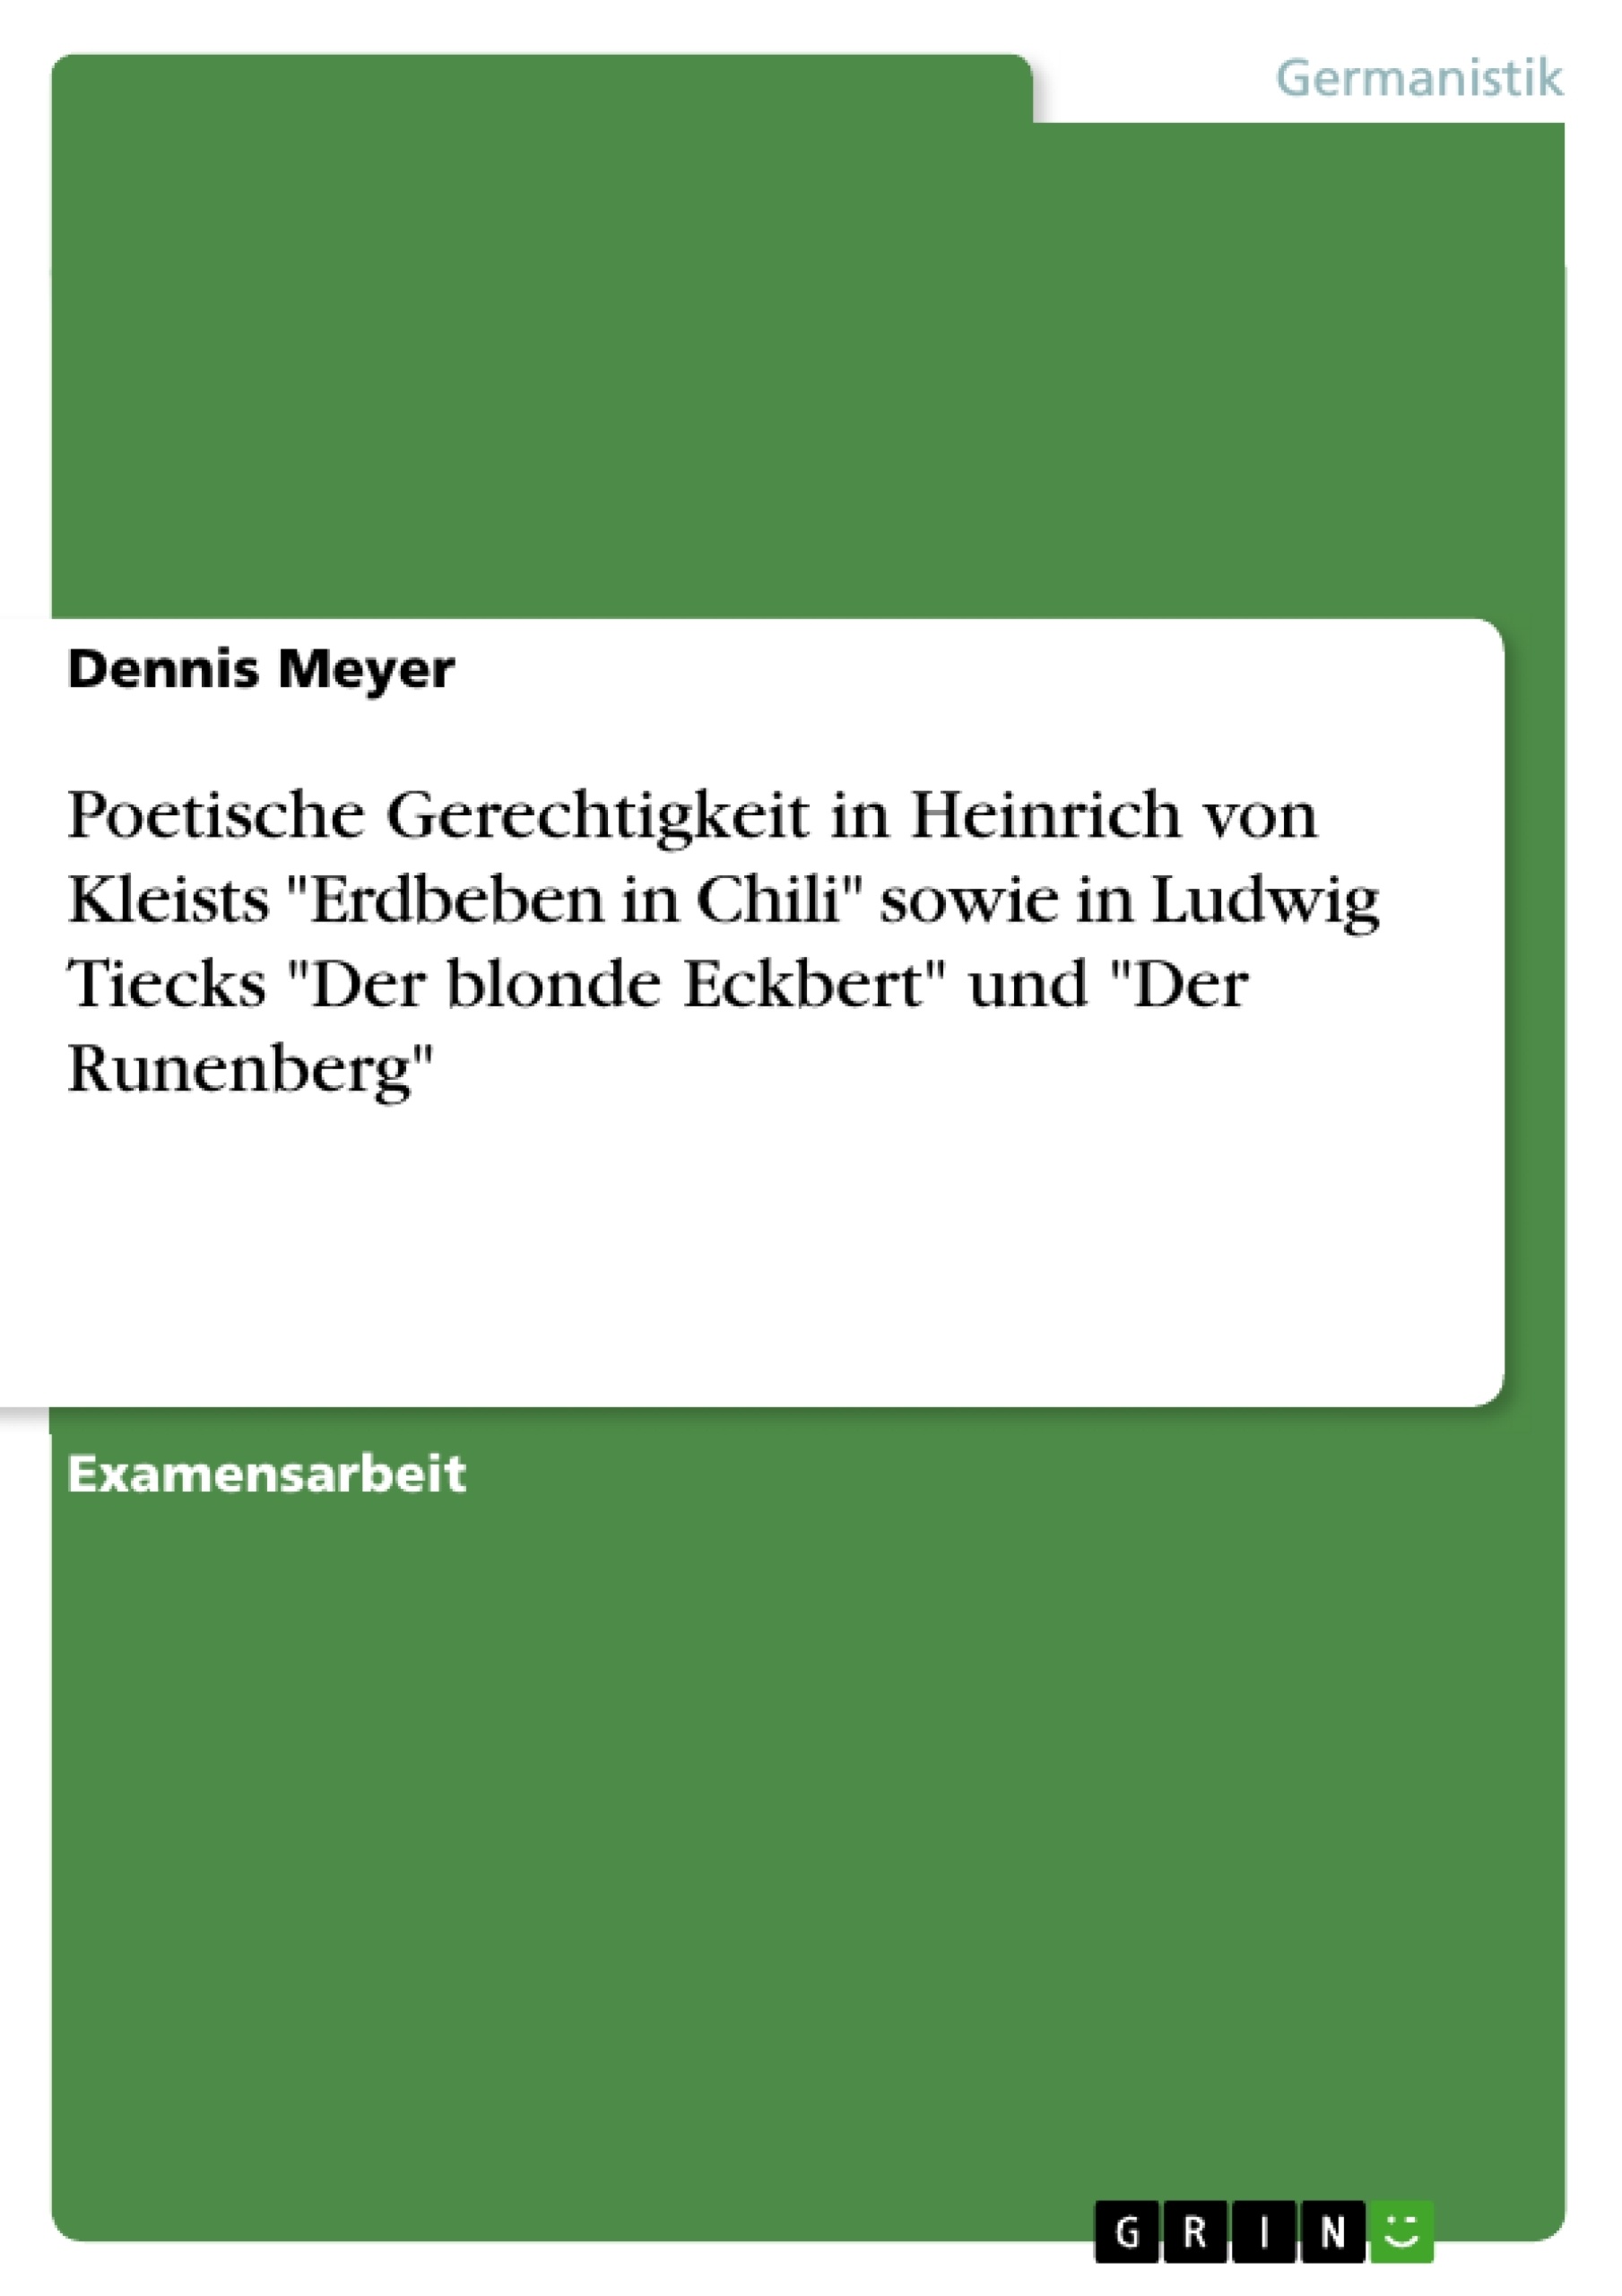 Título: Poetische Gerechtigkeit in Heinrich von Kleists "Erdbeben in Chili" sowie in Ludwig Tiecks "Der blonde Eckbert" und "Der Runenberg"